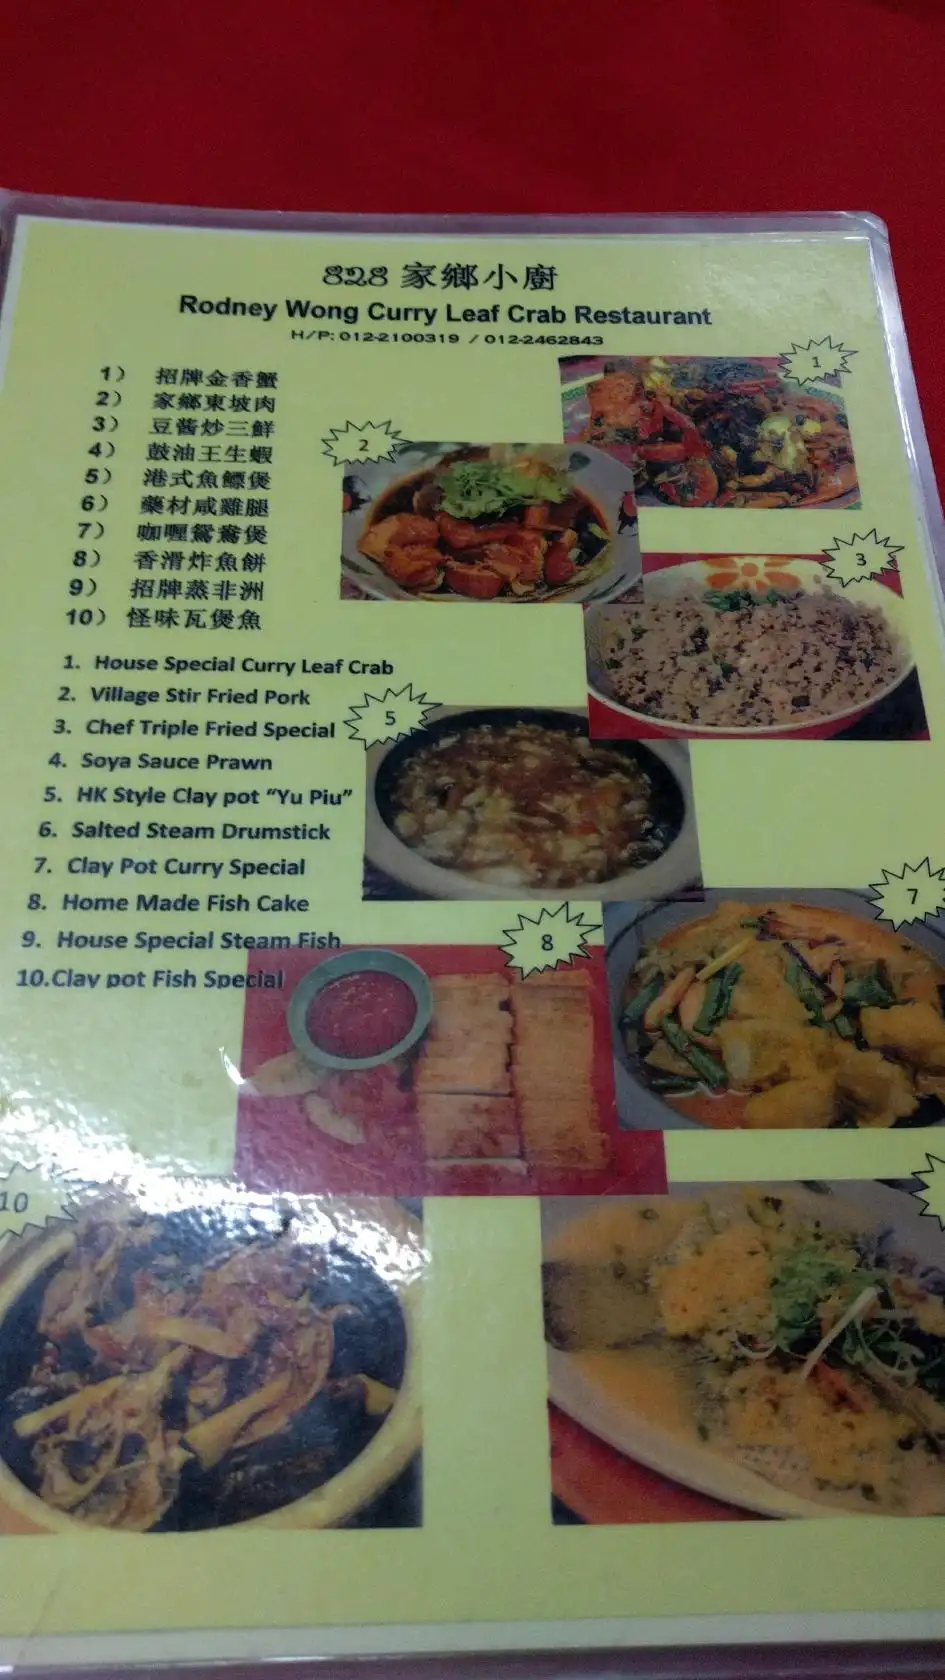 828 Rodney Wong Curry Leaf Crab Restaurant